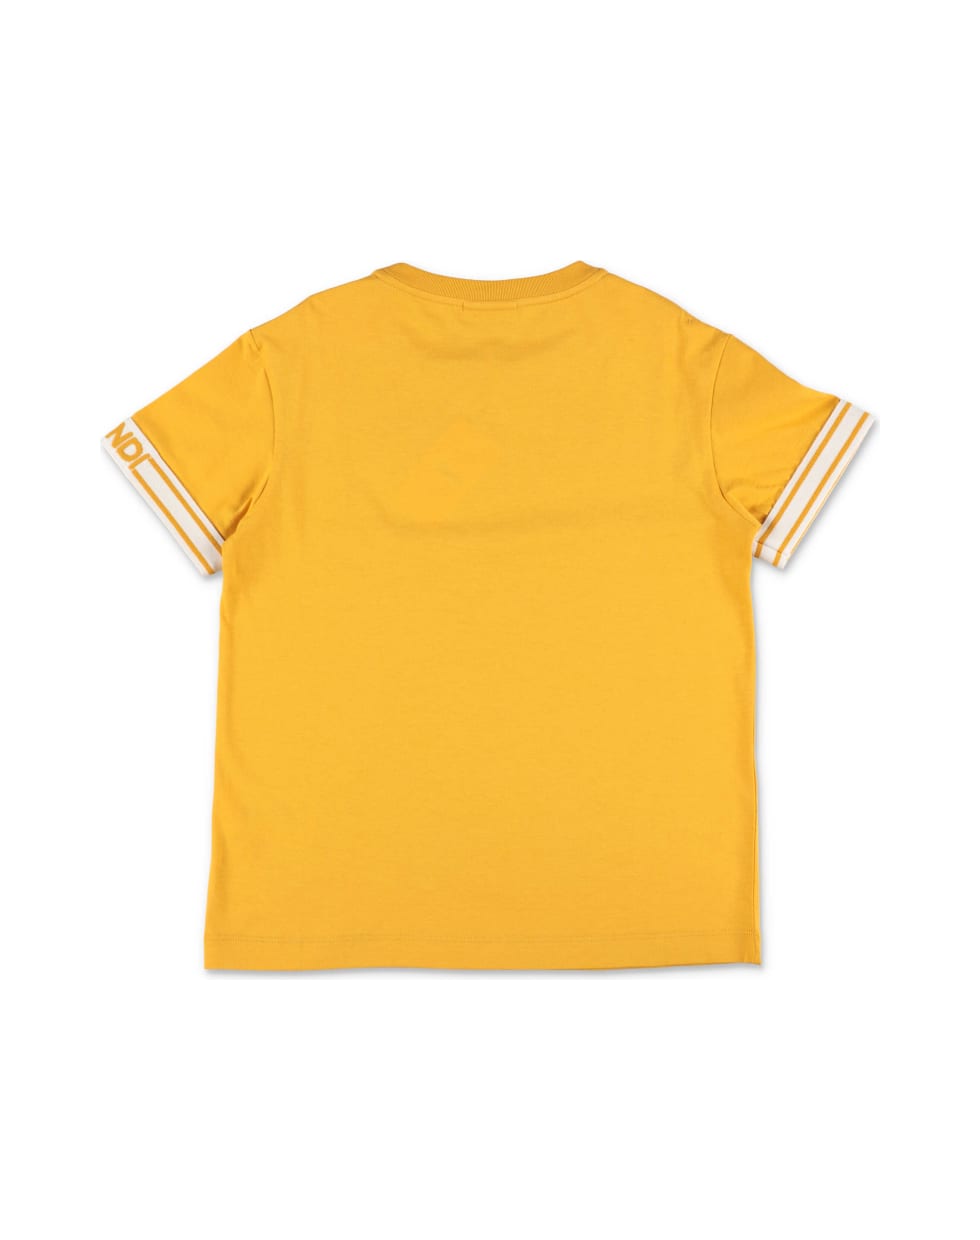 Fendi T-shirt Giallo Senape In Jersey Di Cotone - Giallo